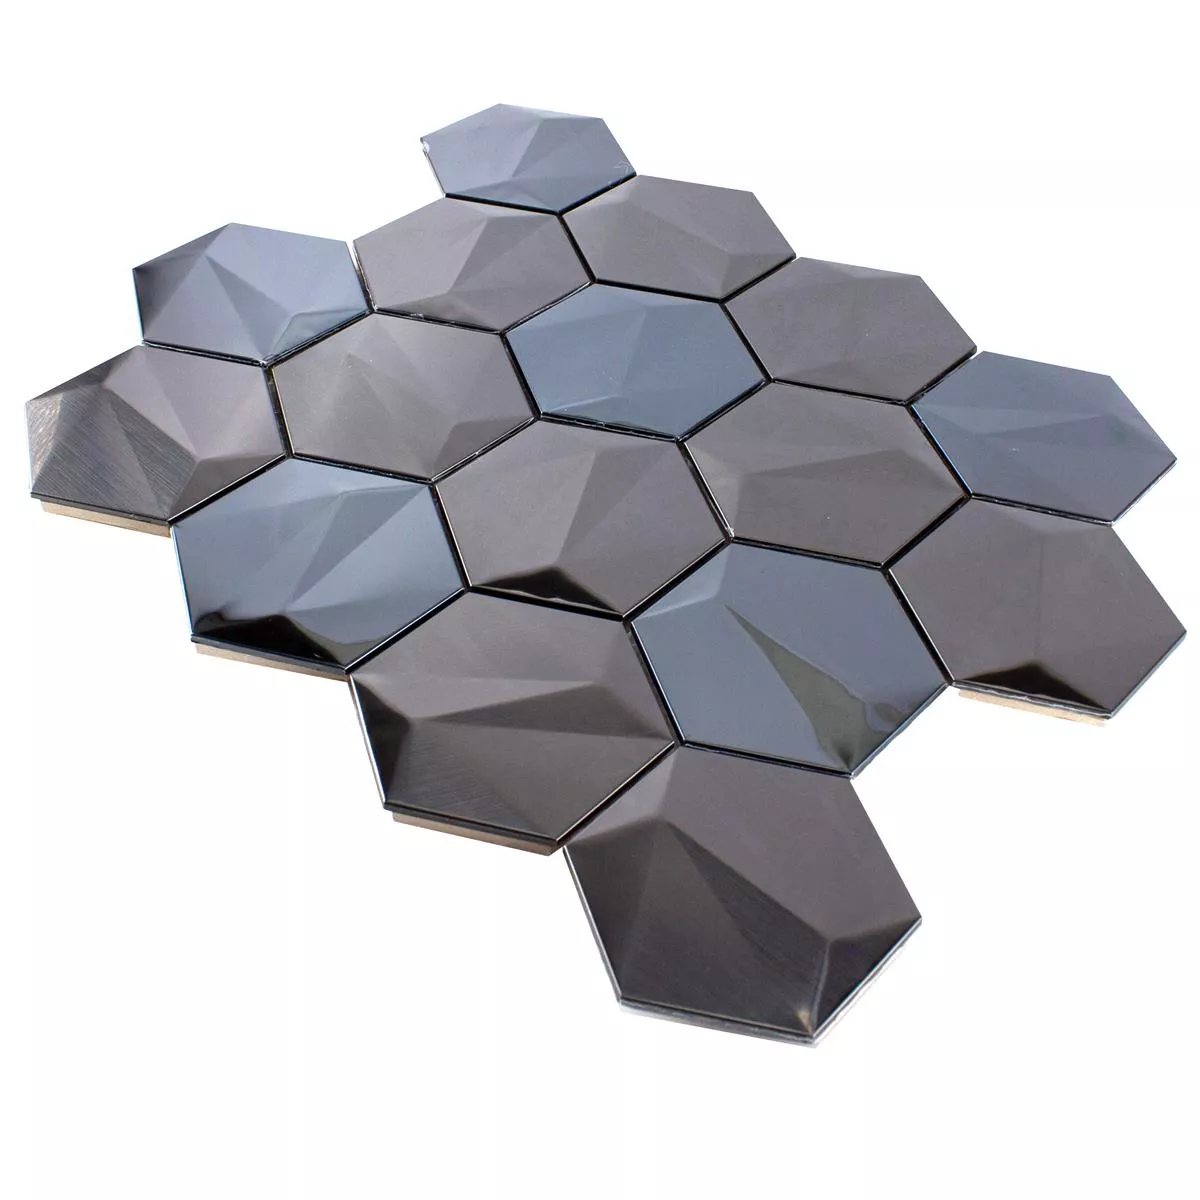 Muestra Acero Inoxidable Azulejos De Mosaico Durango Hexagonales 3D Marrón